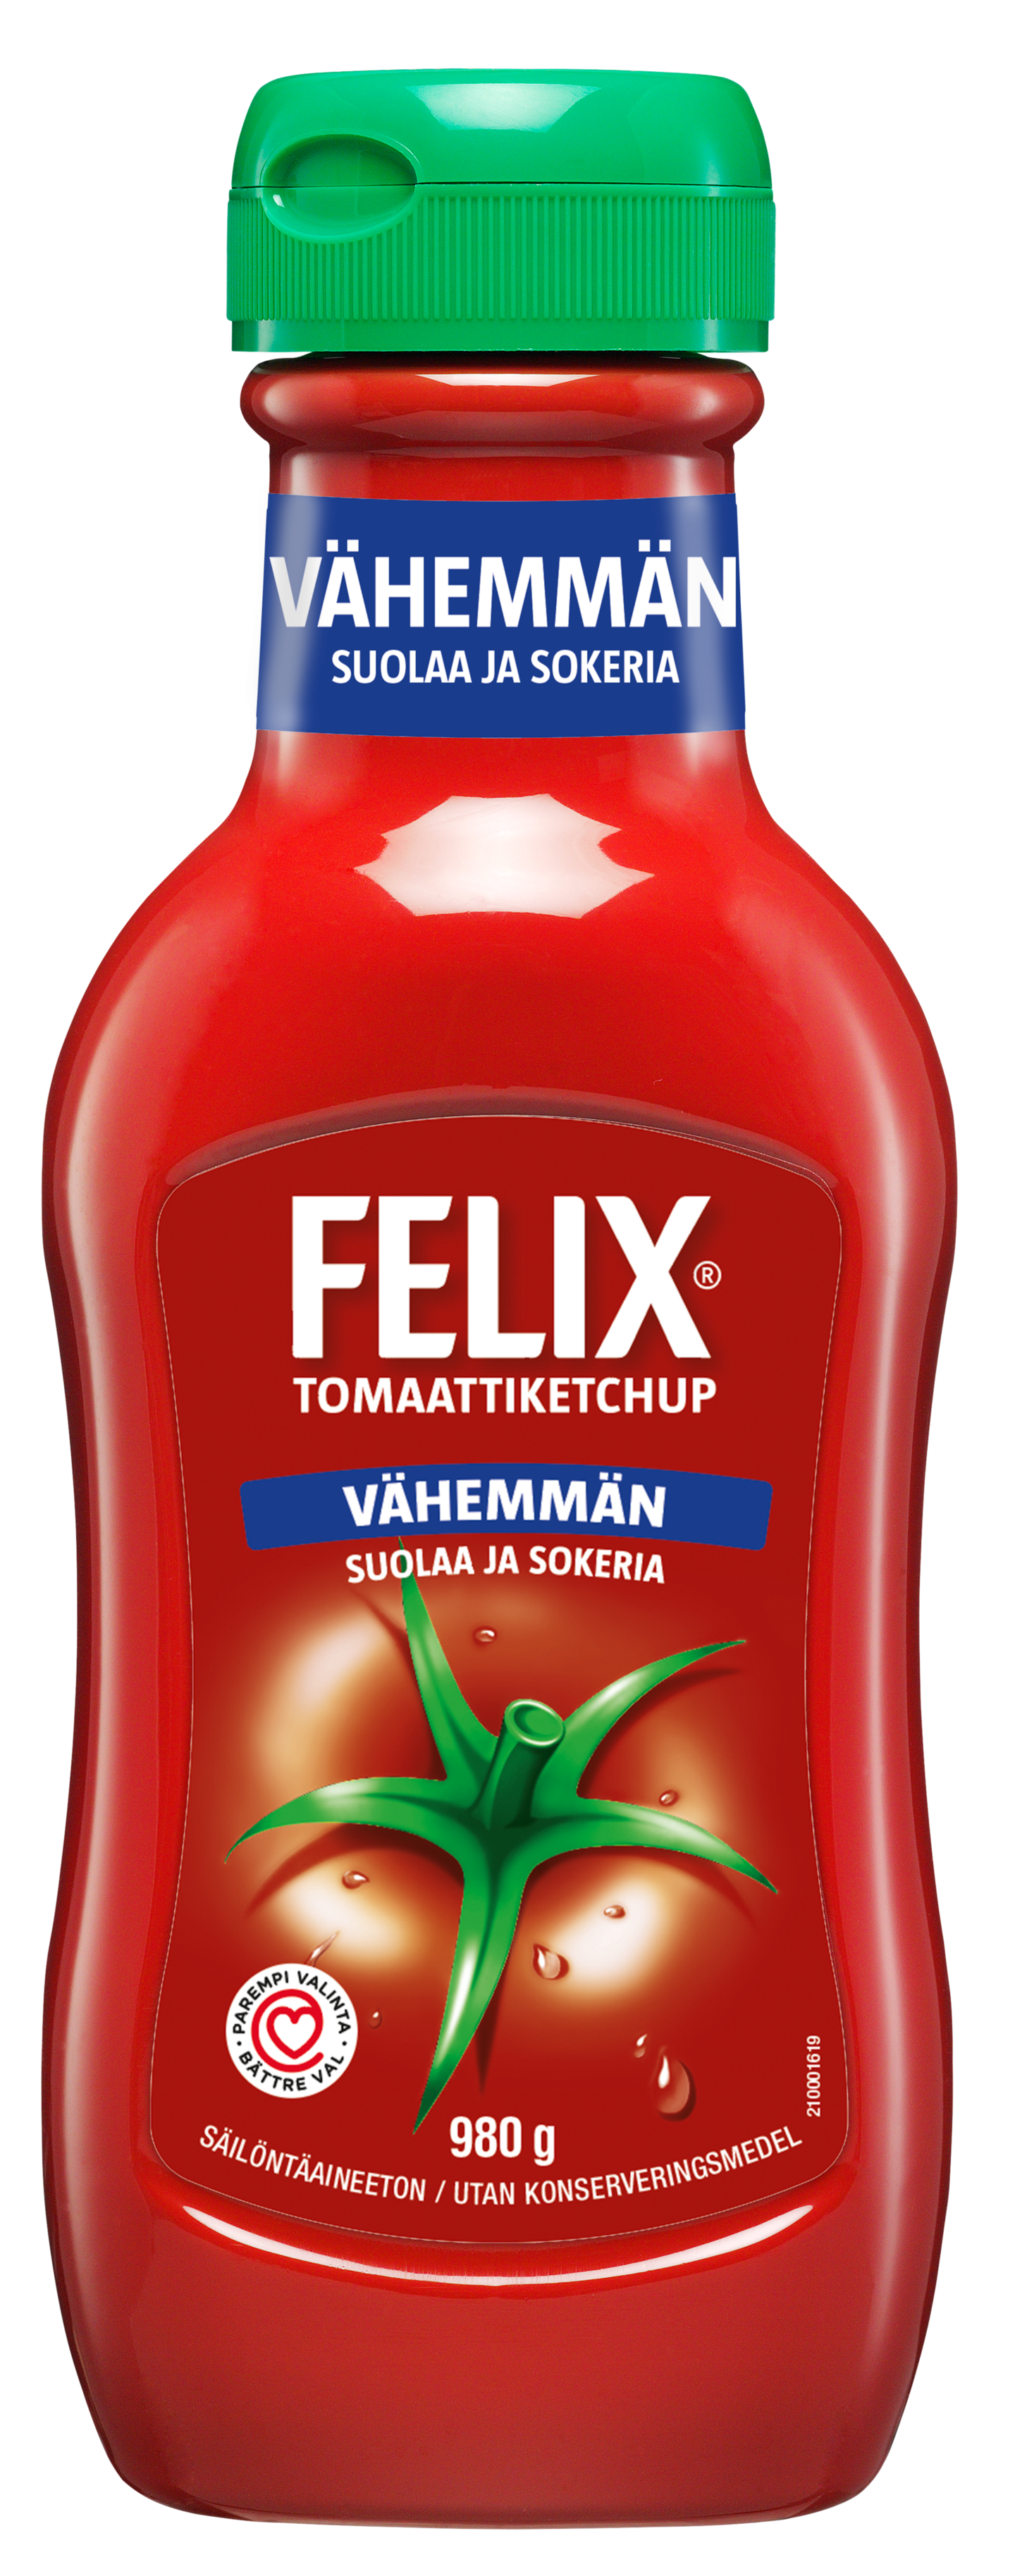 Felix ketchup, vähemmän suolaa ja sokeria 980g